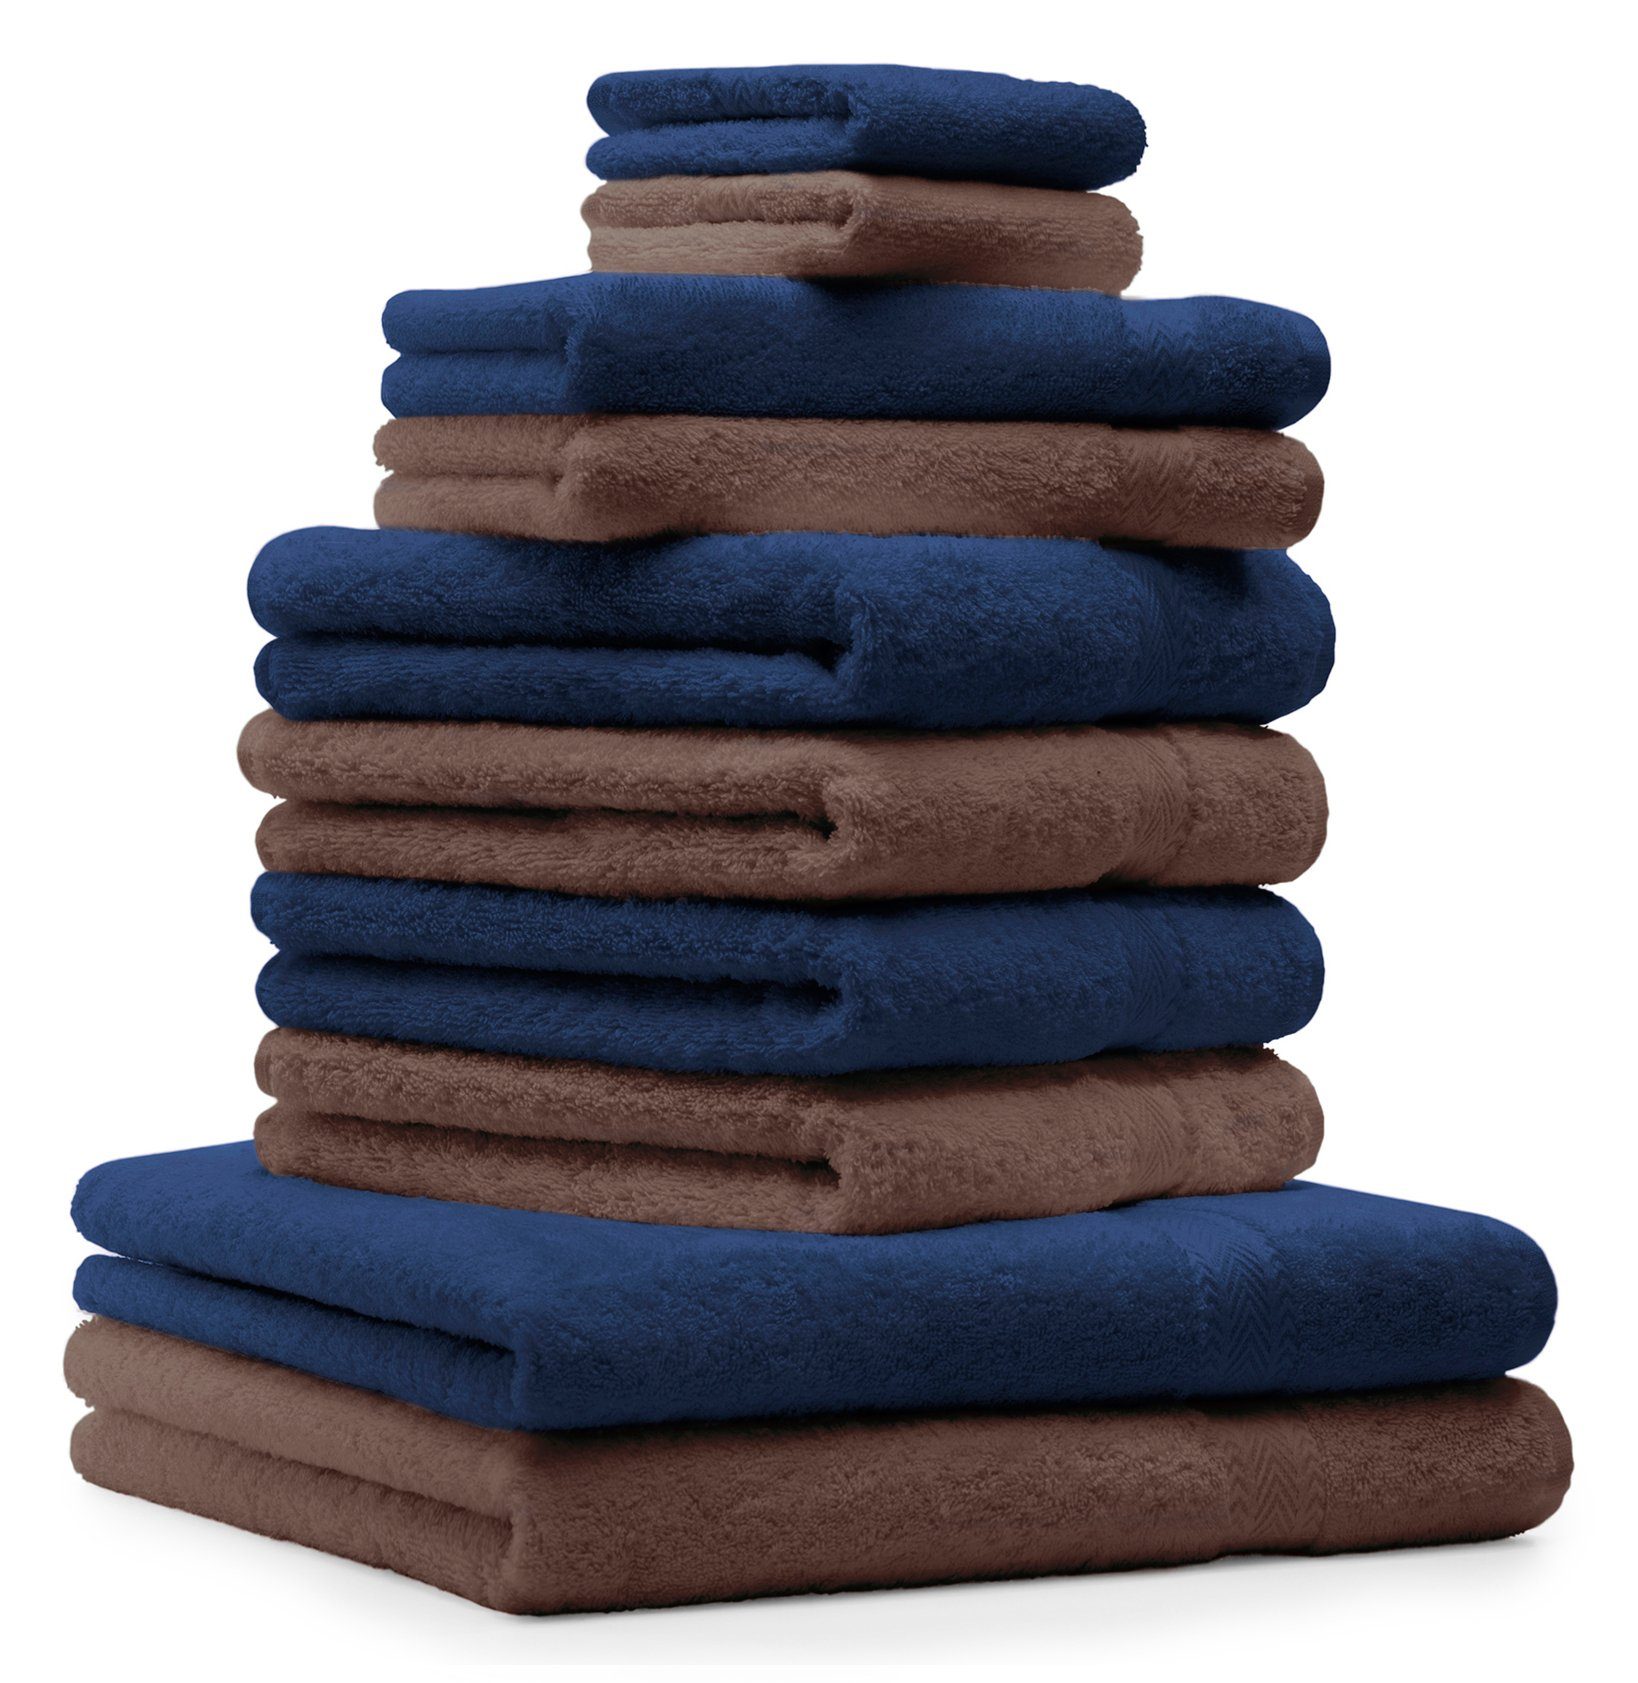 Betz Handtuch Set 10-TLG. Handtücher-Set Classic Farbe dunkelblau und nussbraun, 100% Baumwolle | Handtuch-Sets